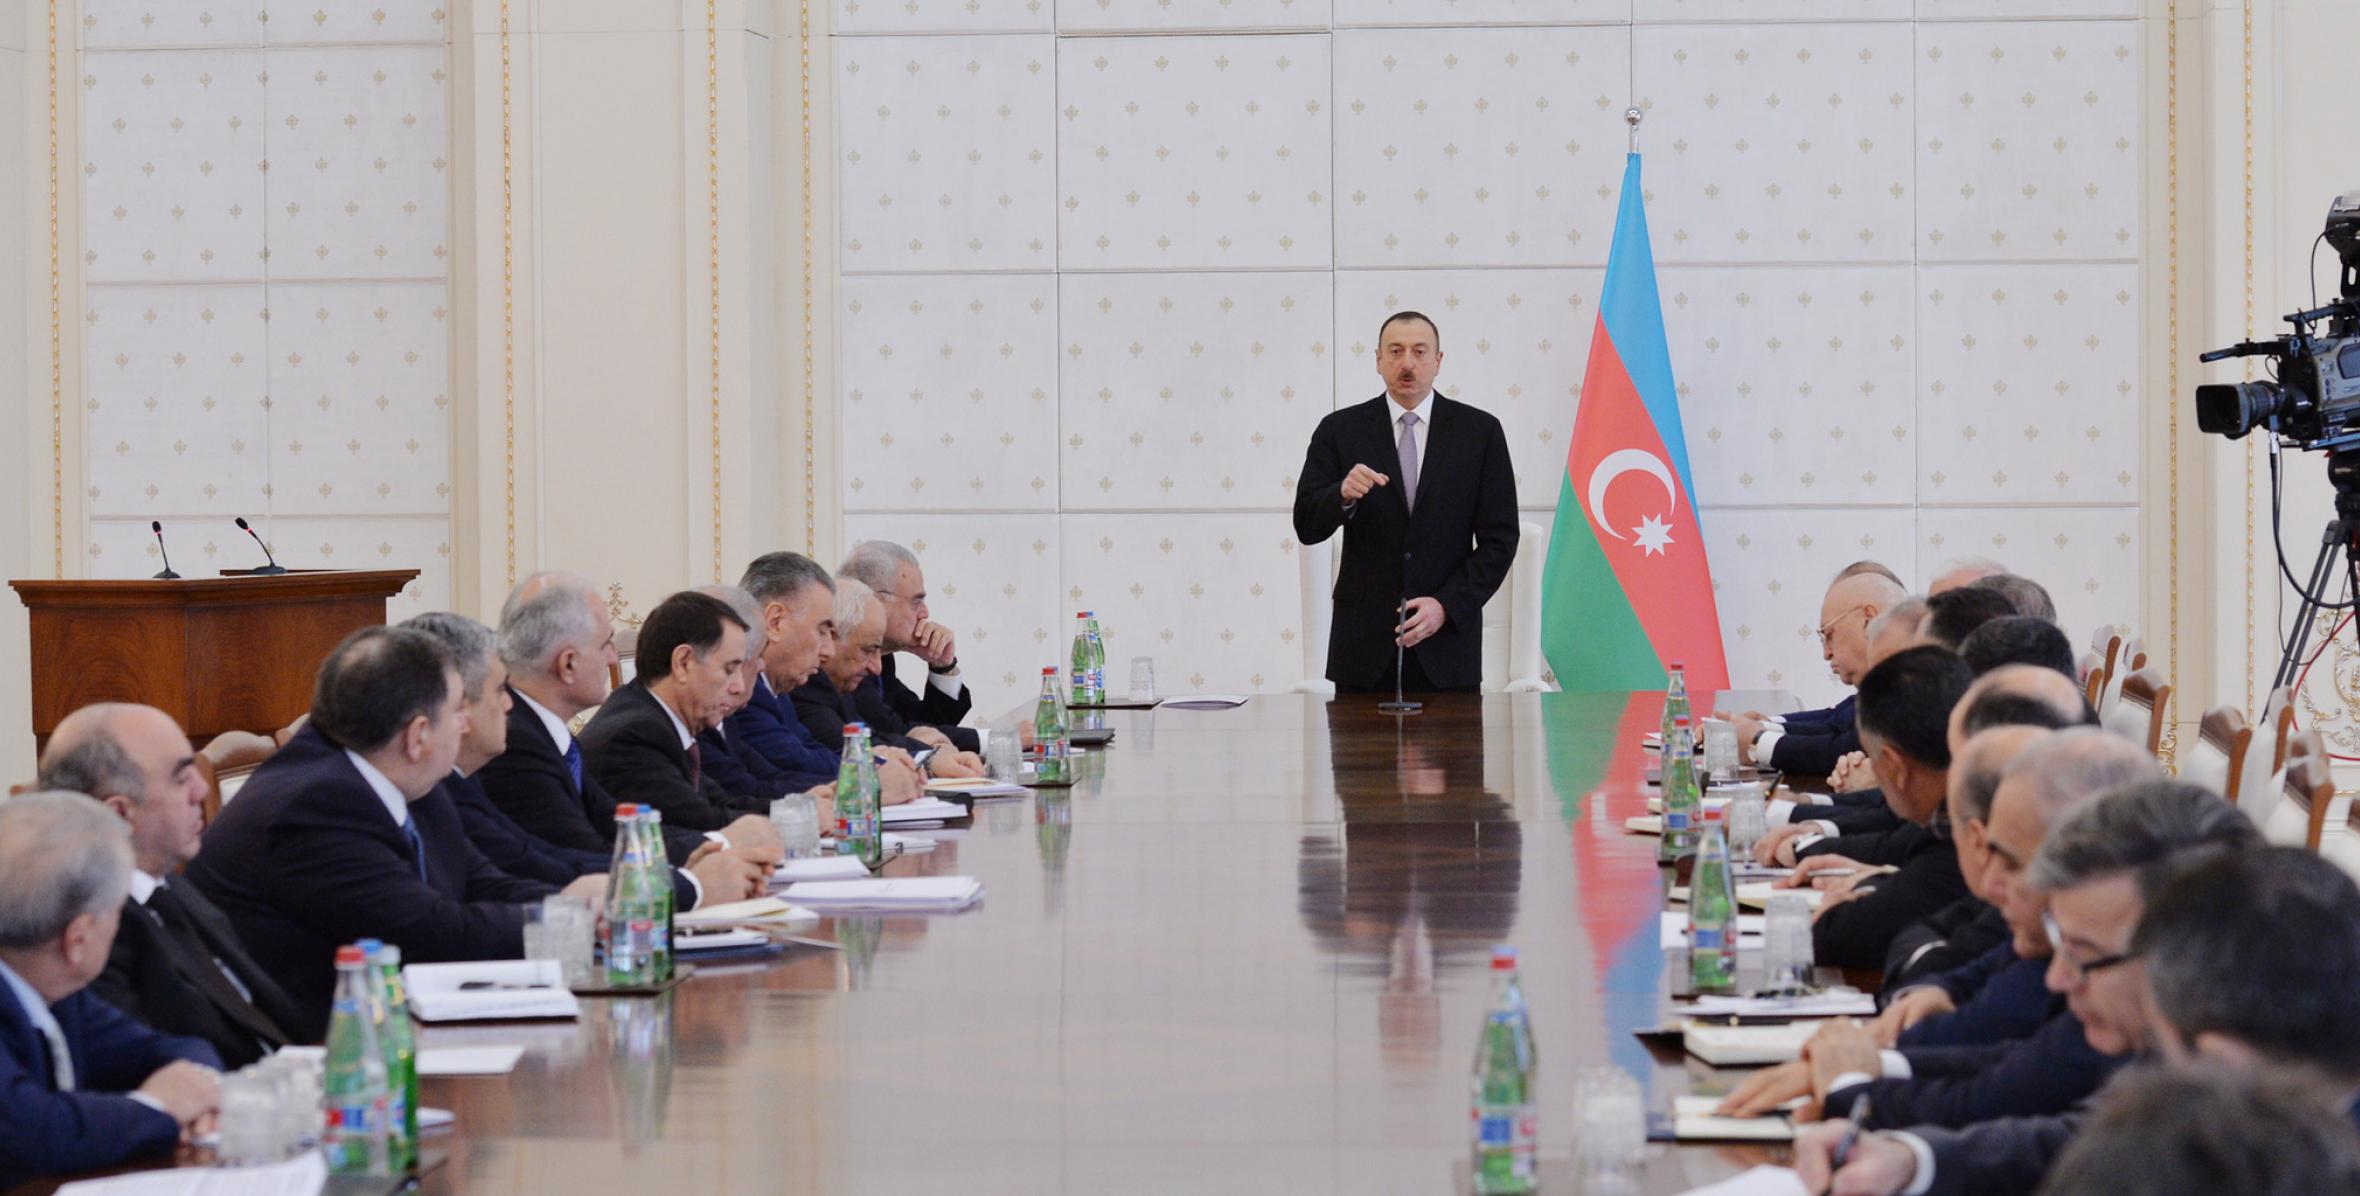 Вступительная речь Ильхама Алиева на заседании Кабинета Министров, посвященном итогам социально-экономического развития за 2014 год и предстоящим в 2015 году задачам